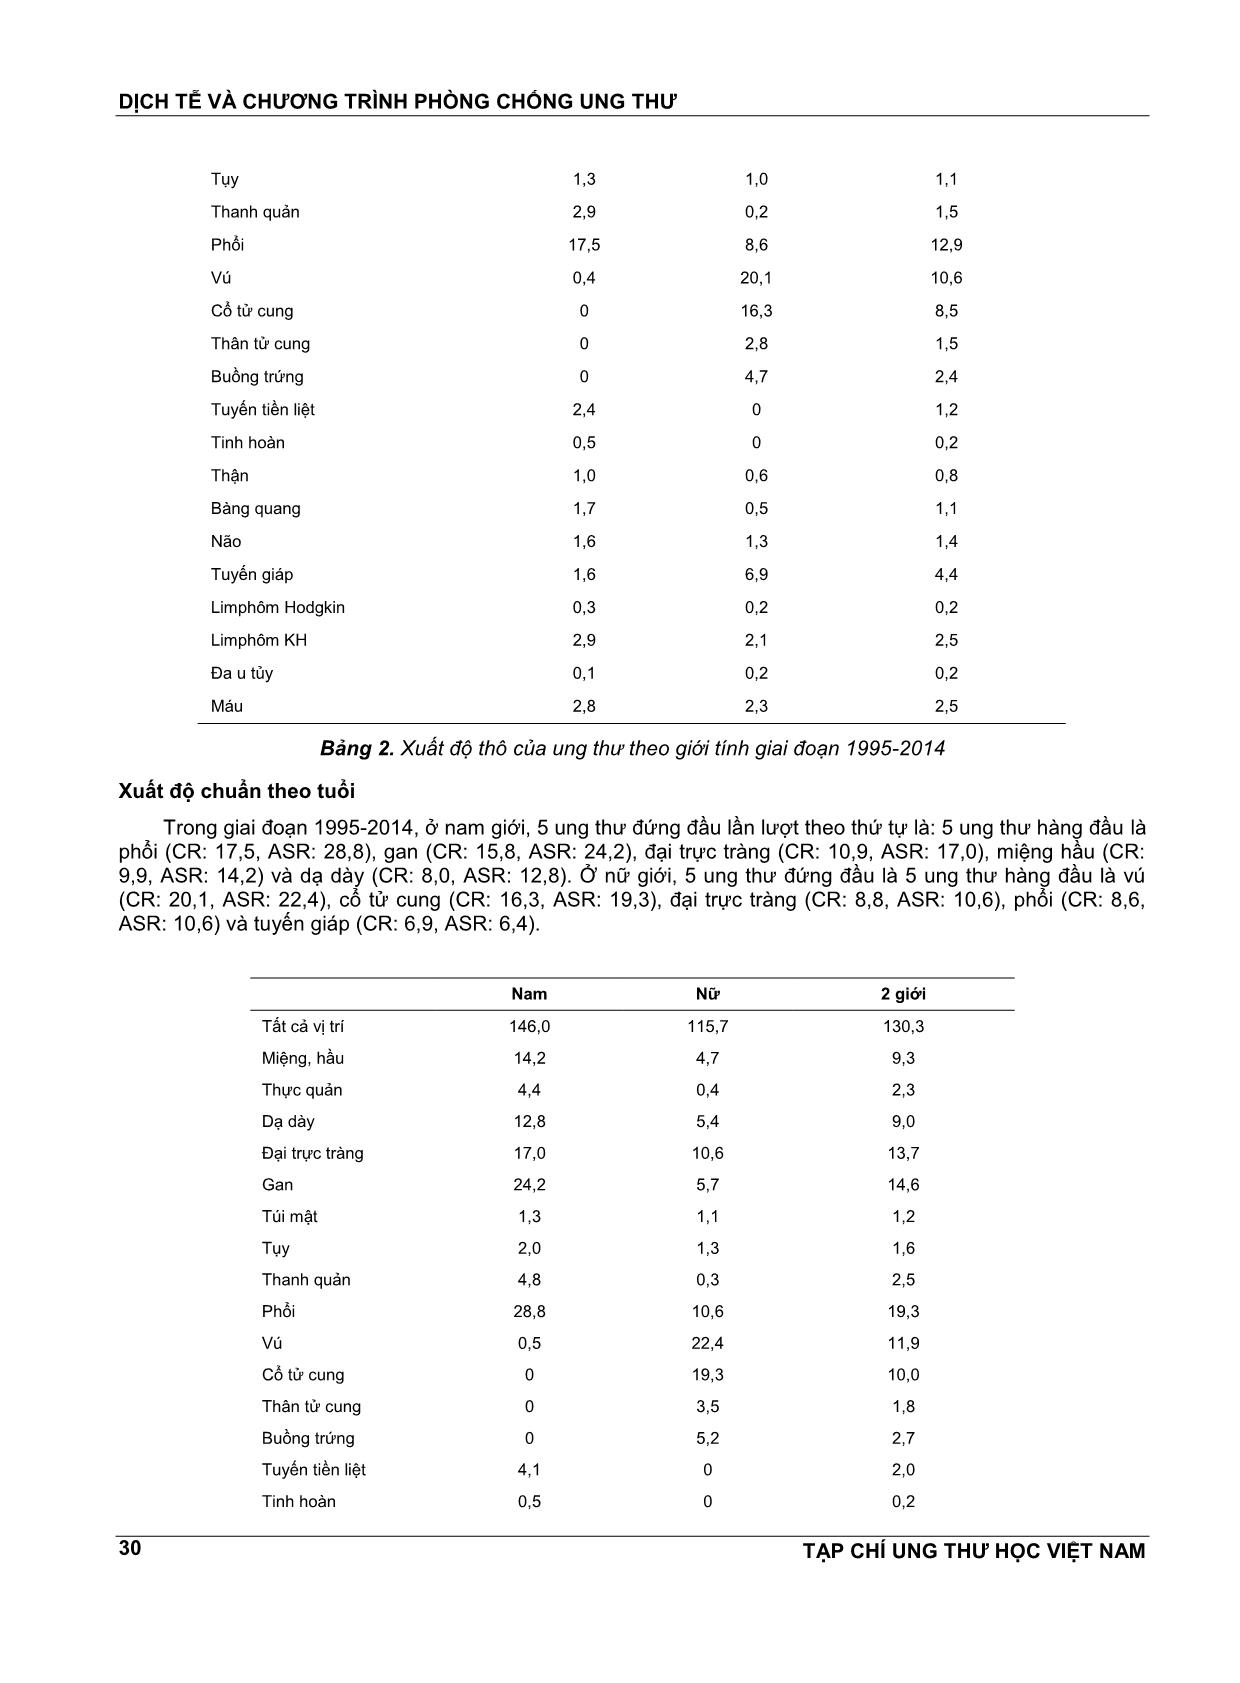 Kết quả ghi nhận ung thư quần thể thành phố Hồ Chí Minh 1995 - 2014 trang 5